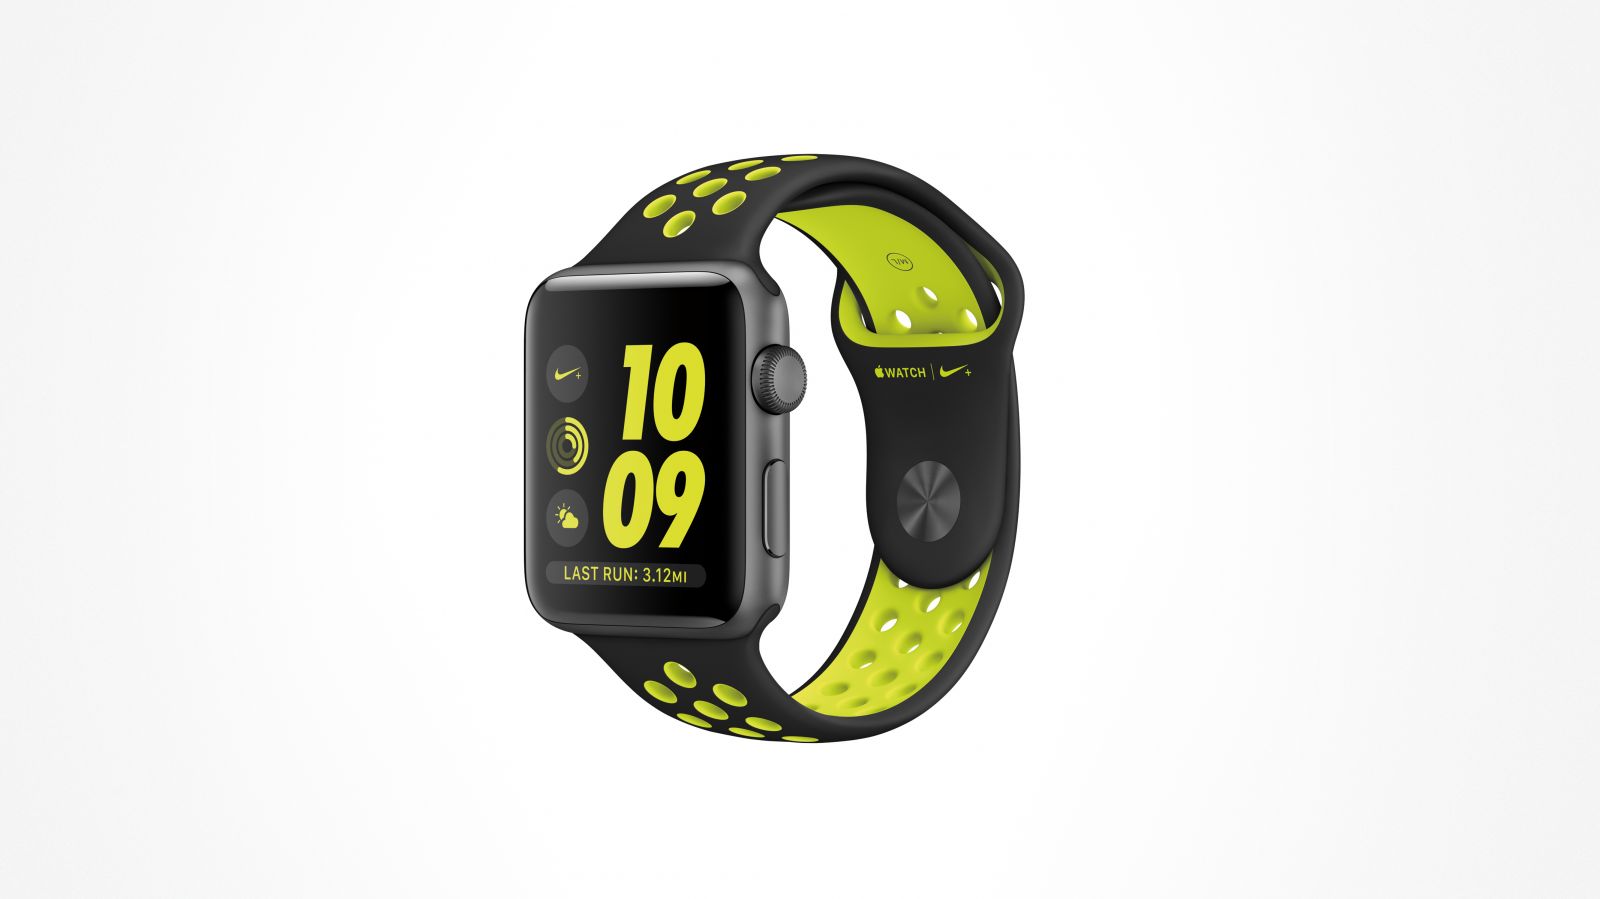 Apple Watch Nike+將在10月底全球上市。NIKE提供